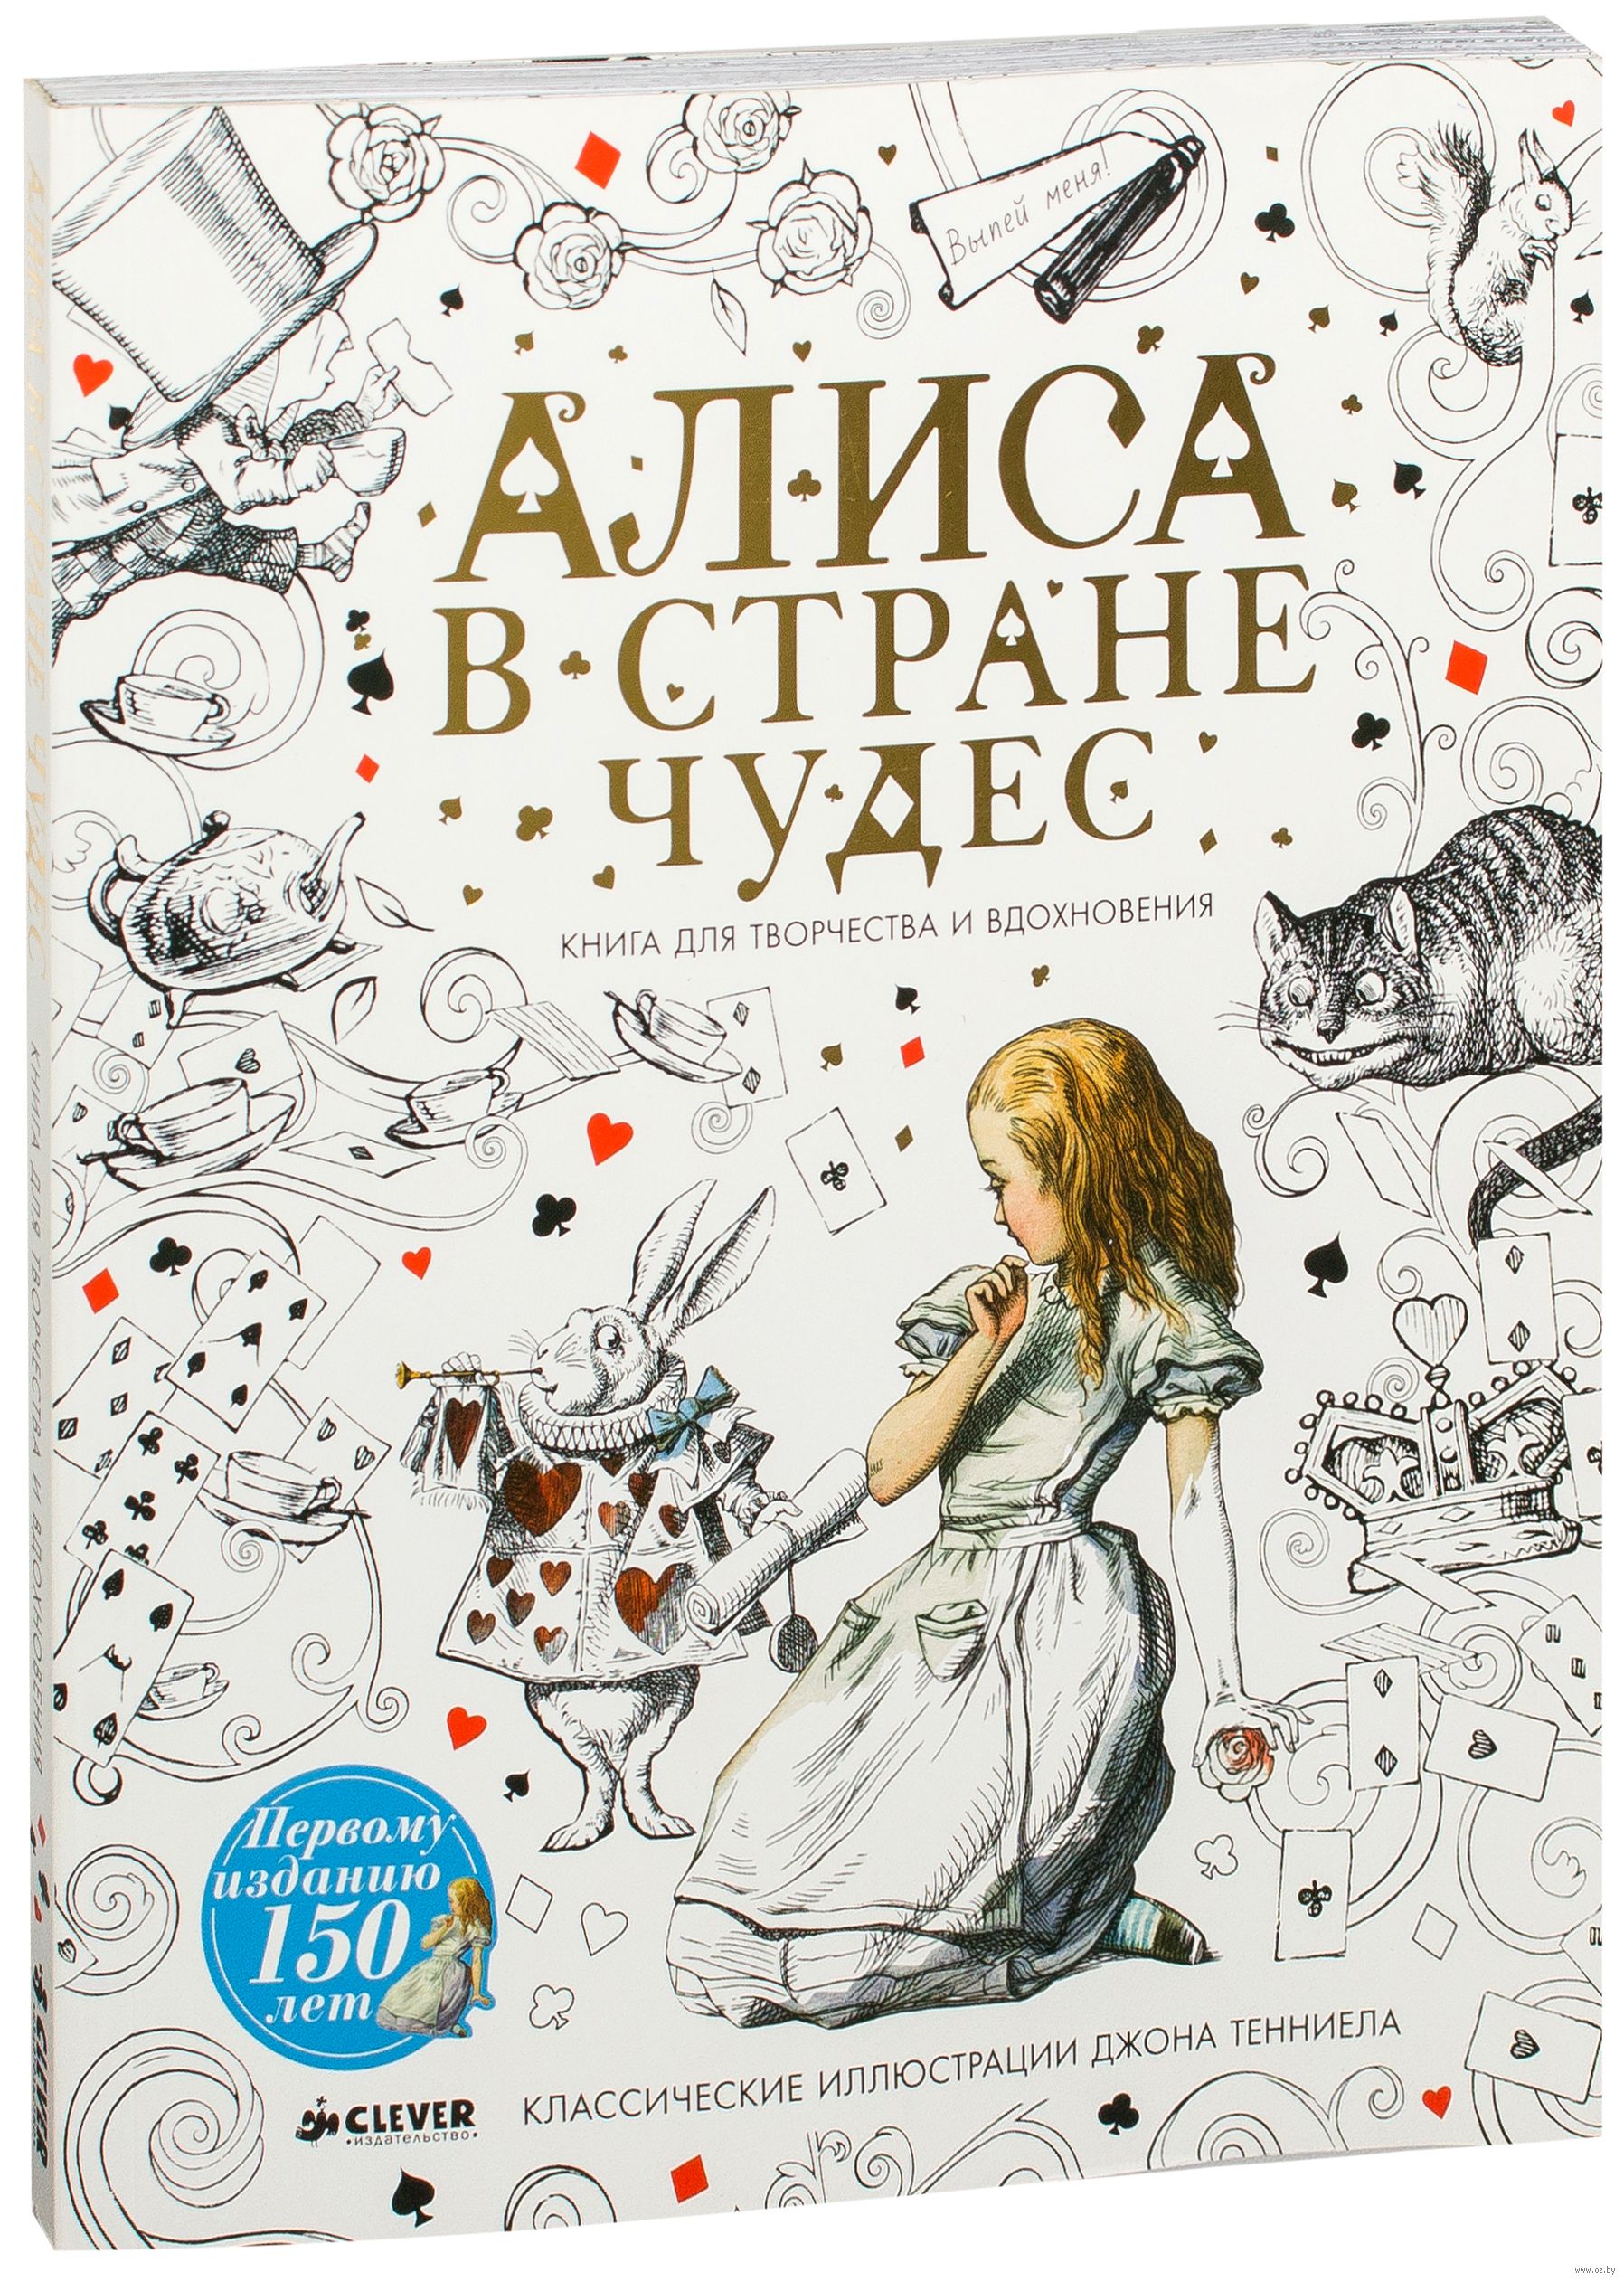 Алиса вебер все книги. Алиса в стране чудес обложка книги. Алиса в стране чудес книга для творчества. Алиса в стране чудес книга обложка красивая. Алиса в стране чудес иллюстрации обложка книги.